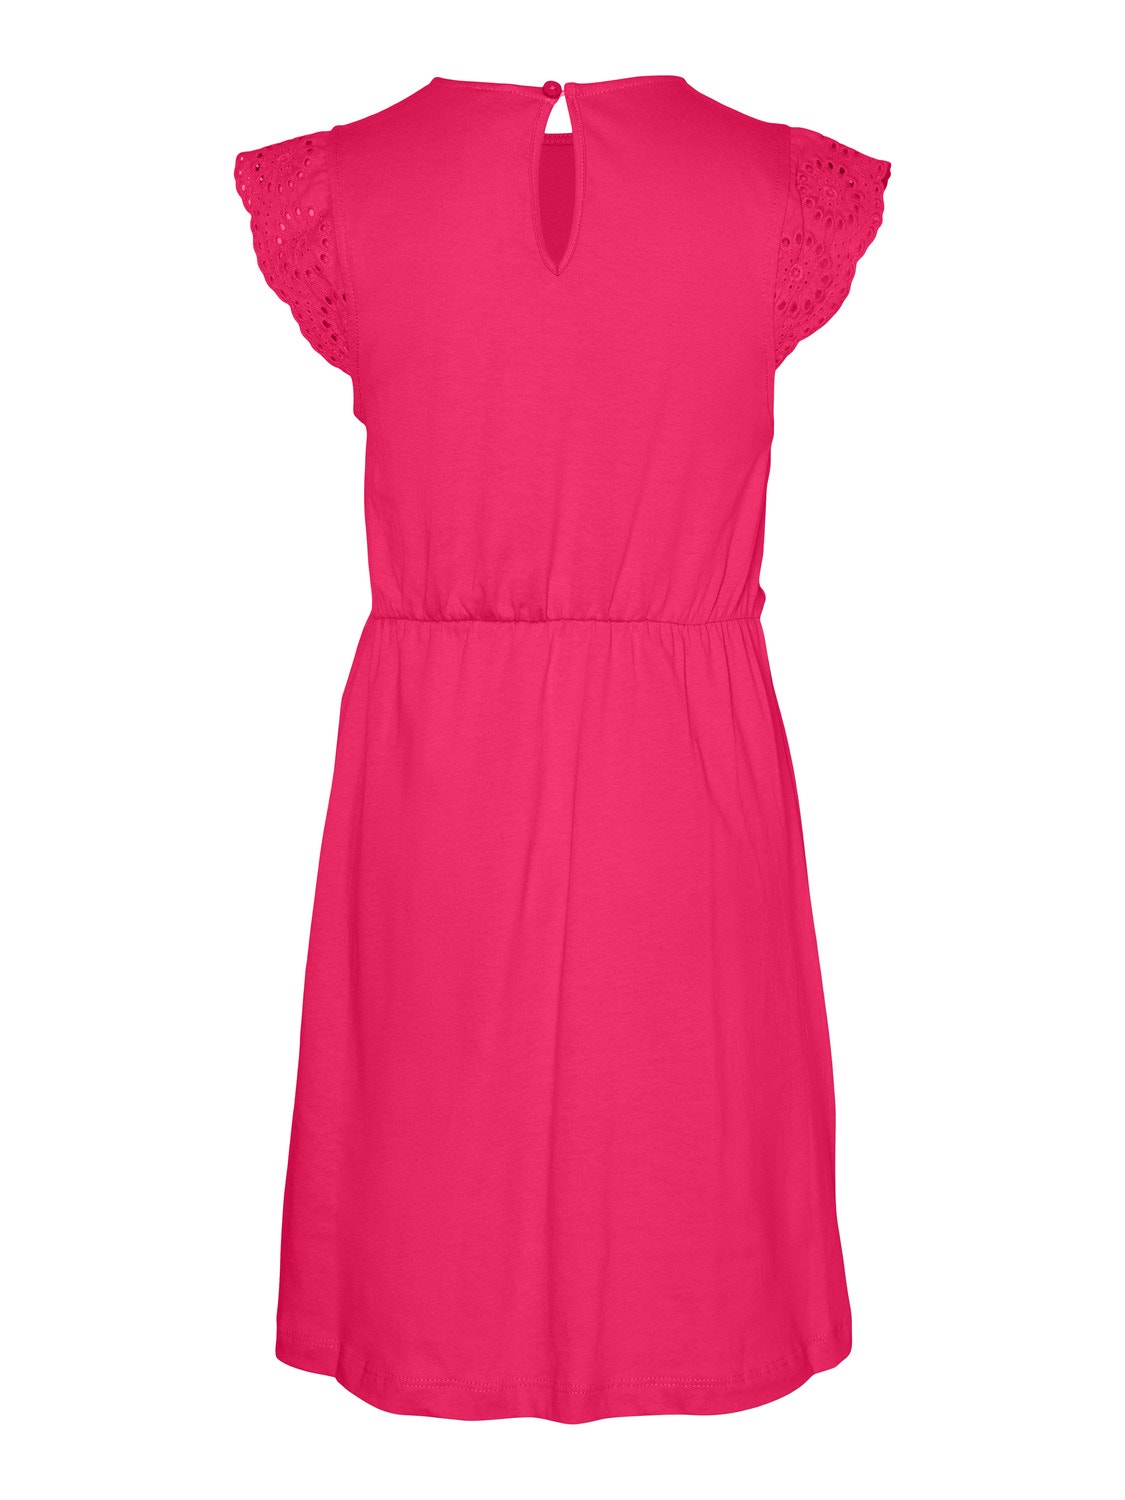 Vero Moda VMEMILY Short dress -Raspberry Sorbet - 10305774